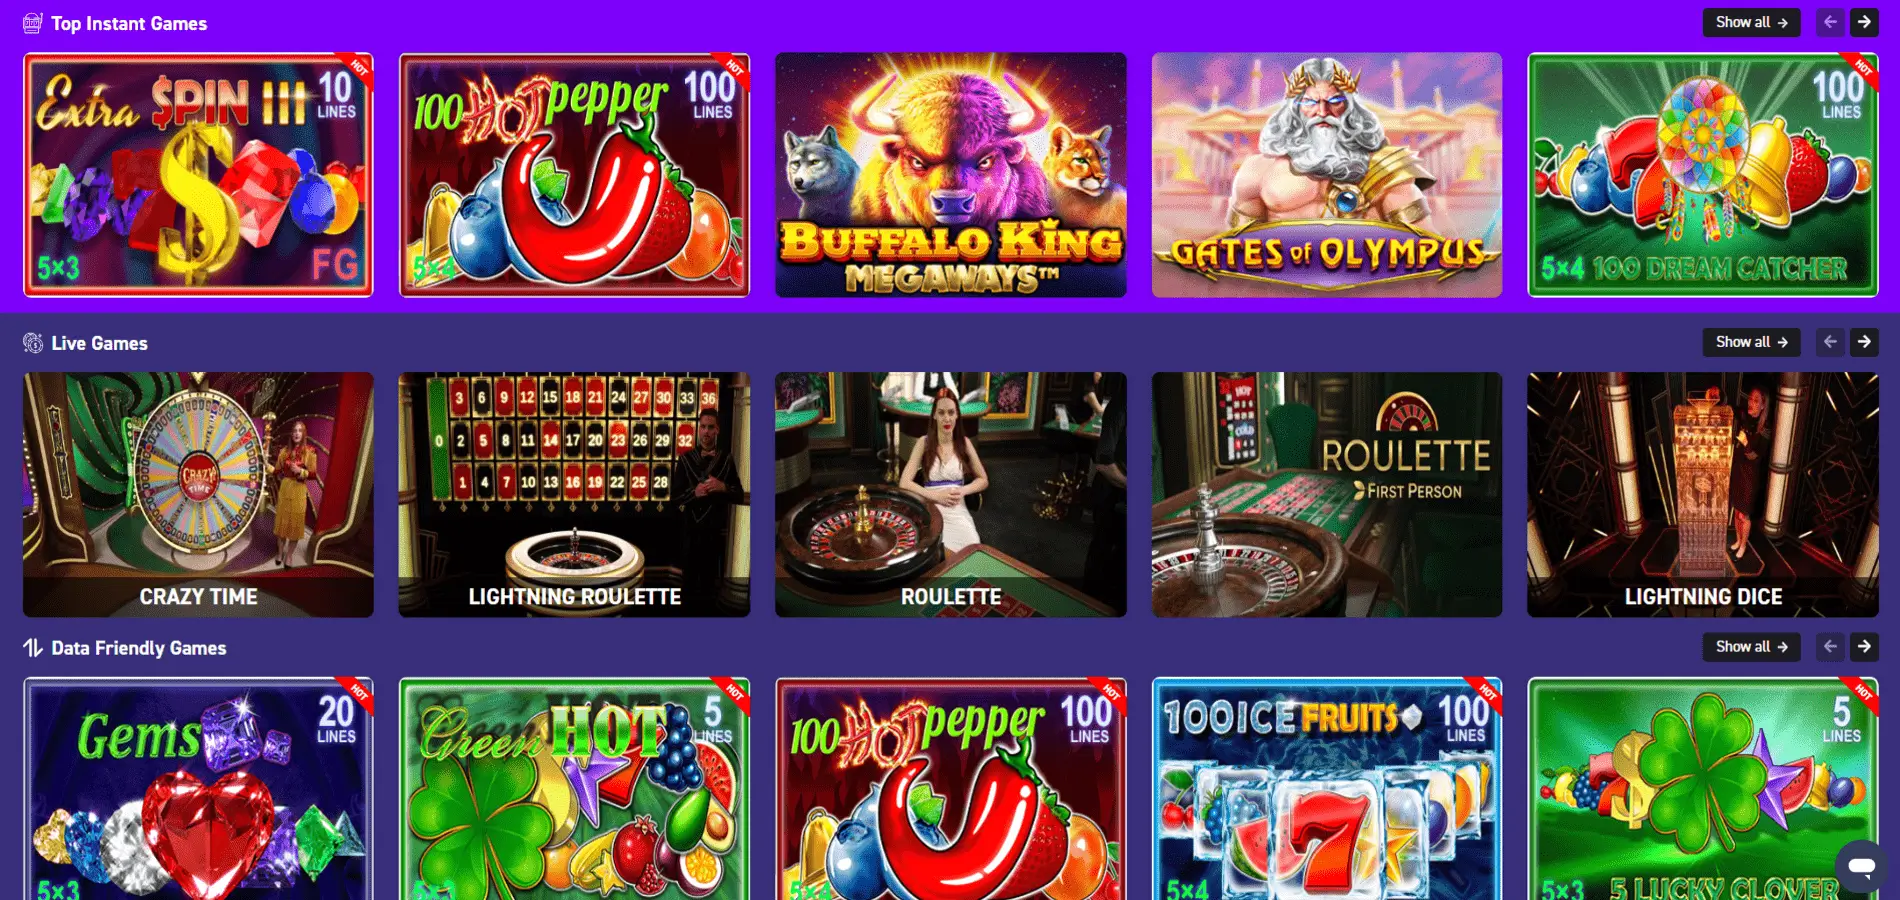 Fafabet online casino games